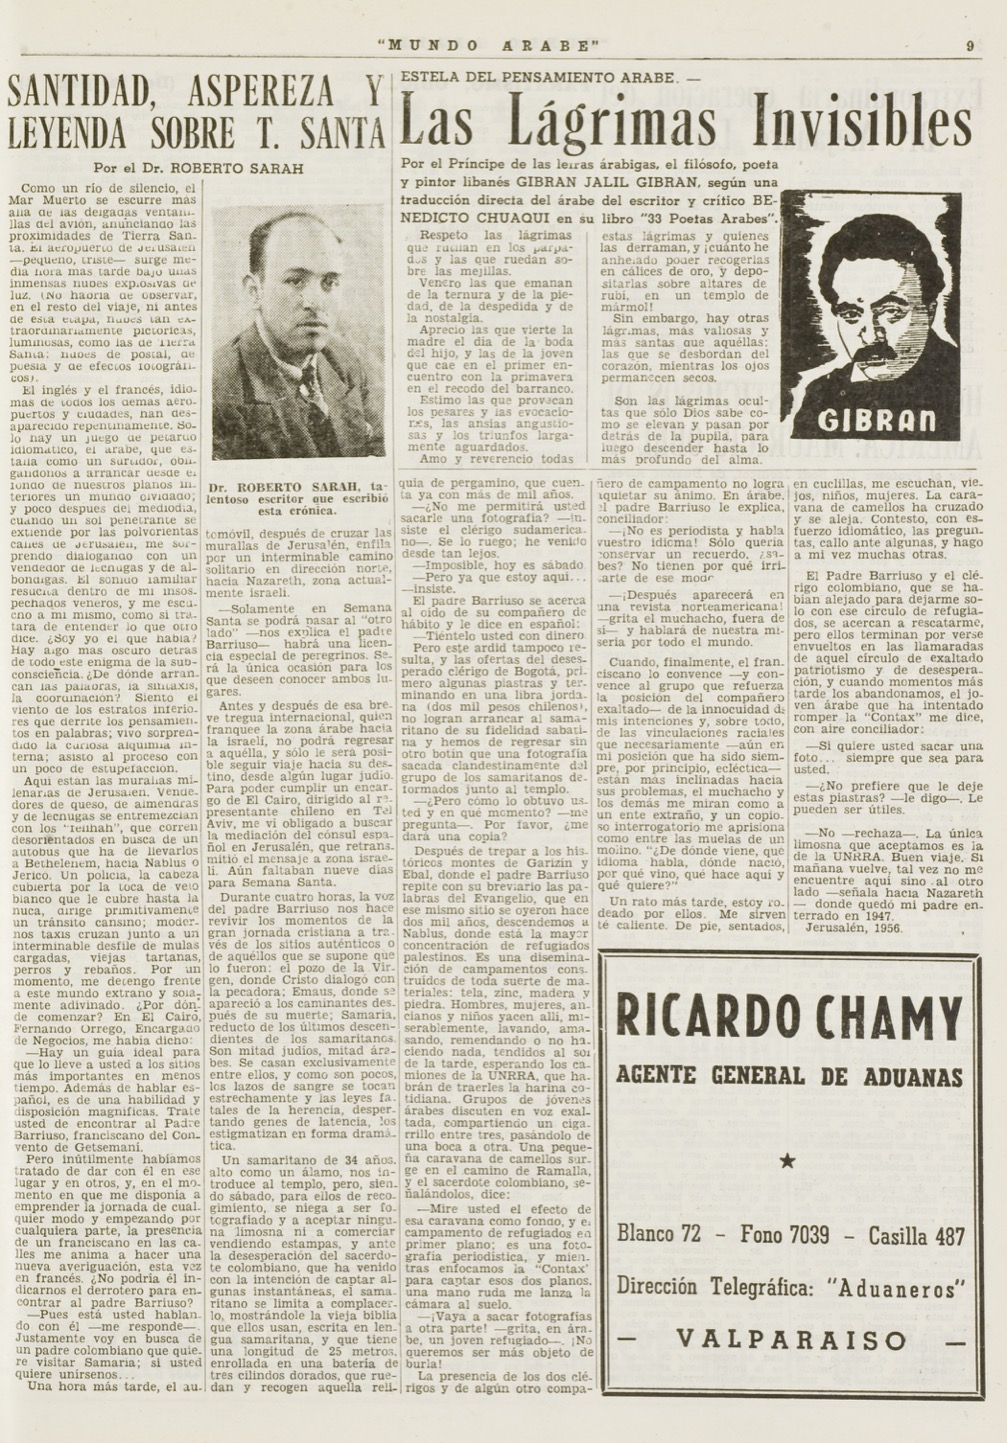 Benedicto Chuaqui, "Gibran Jalil Gibran: Las lagrimas invisibles", Mundo Árabe, Mar 29, 1957, p. 9.